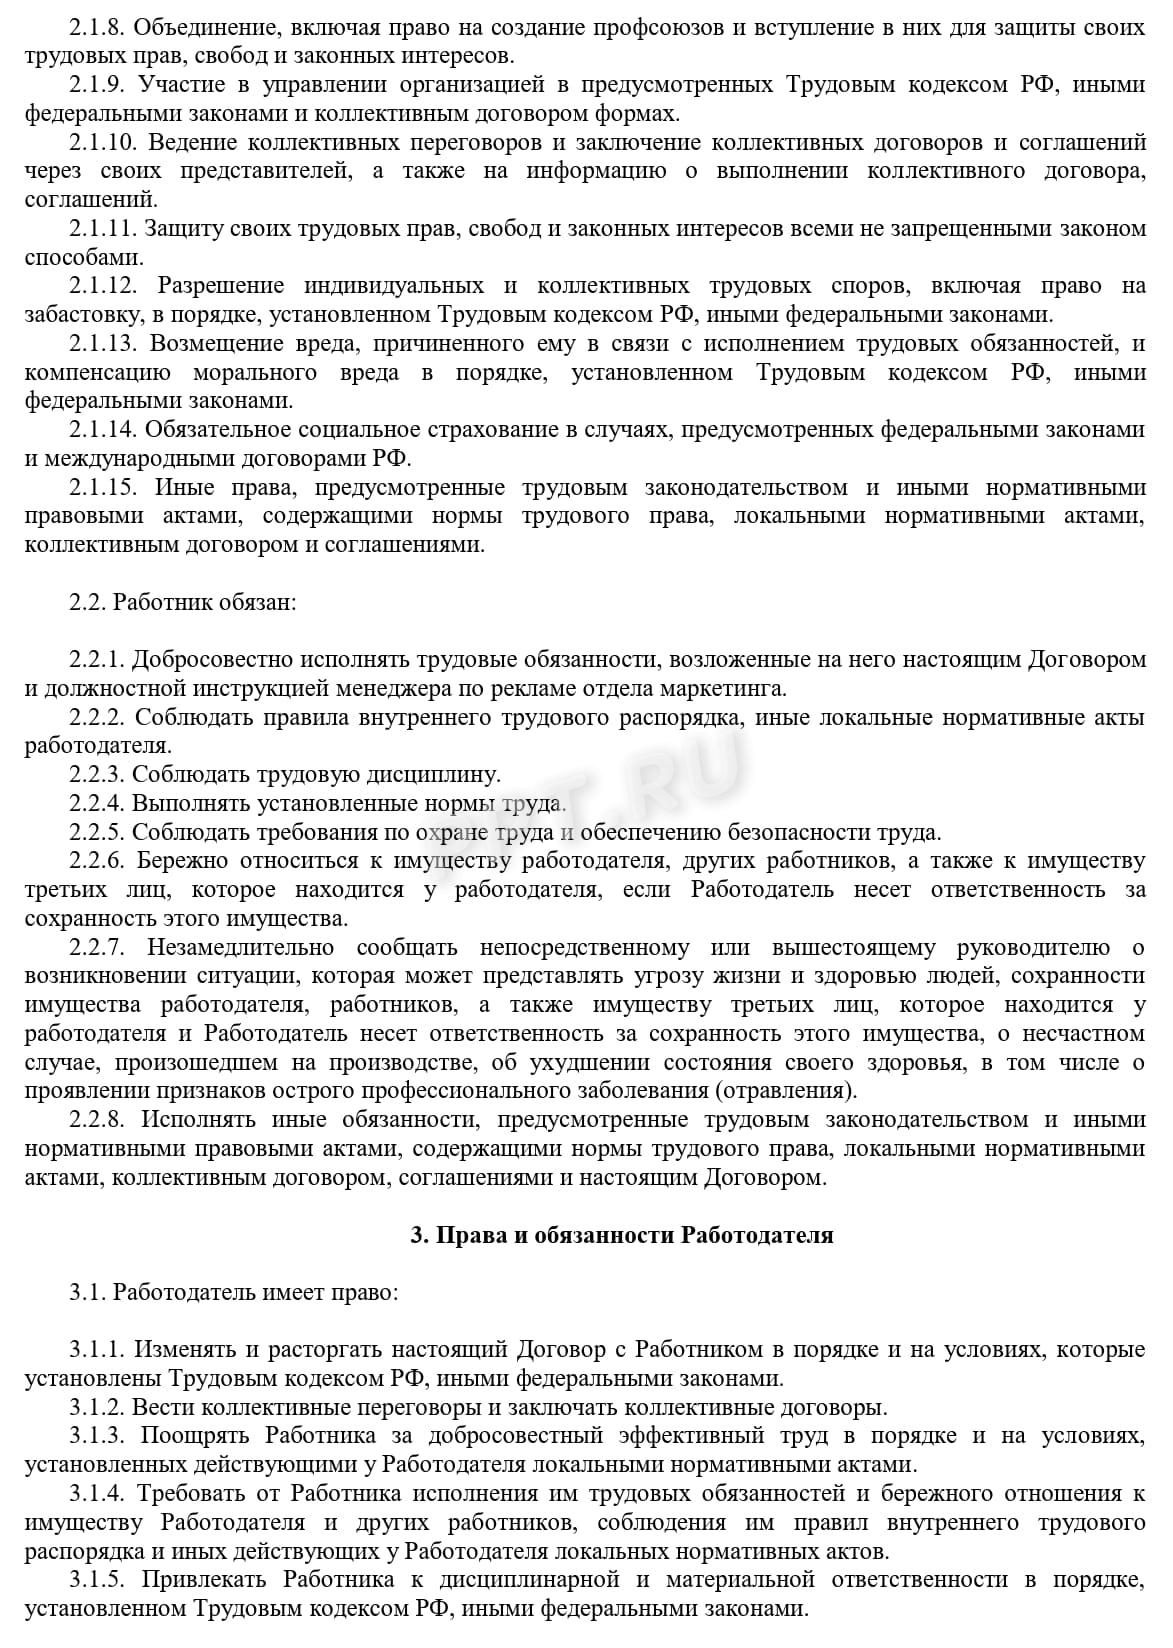 Образец трудового договора с белорусом, стр. 2